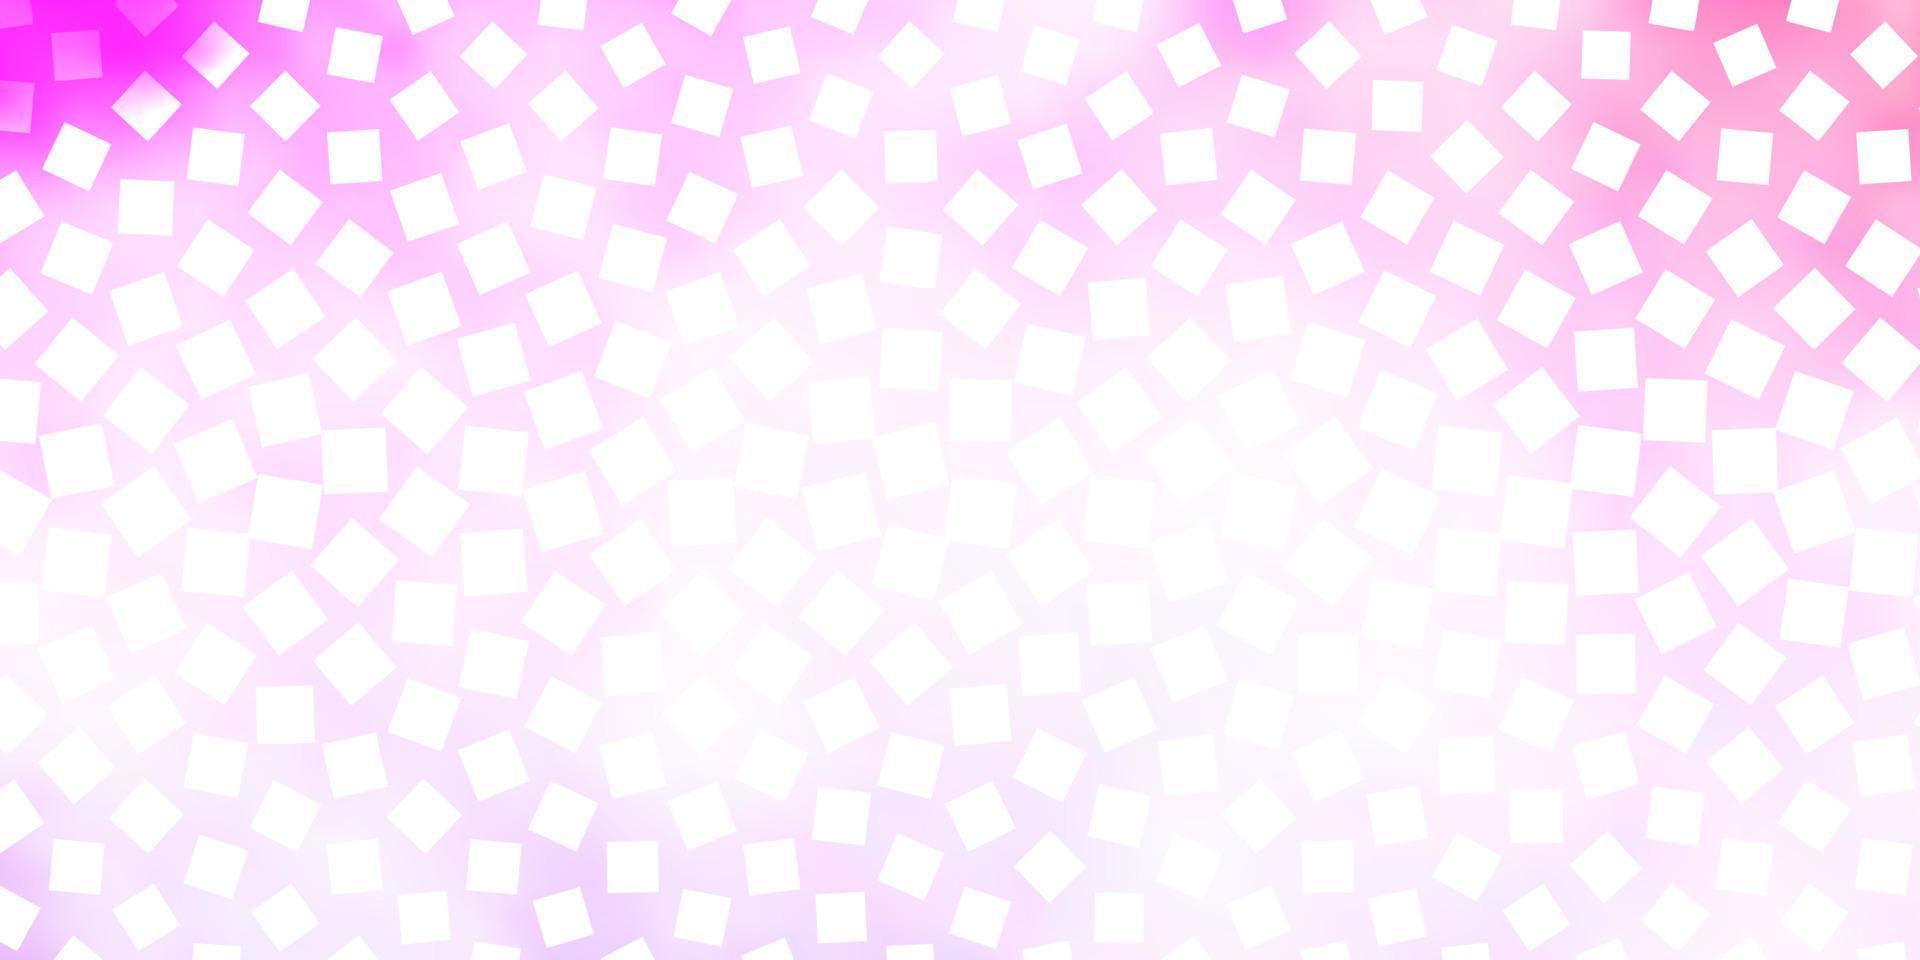 sfondo vettoriale viola chiaro, rosa in stile poligonale.